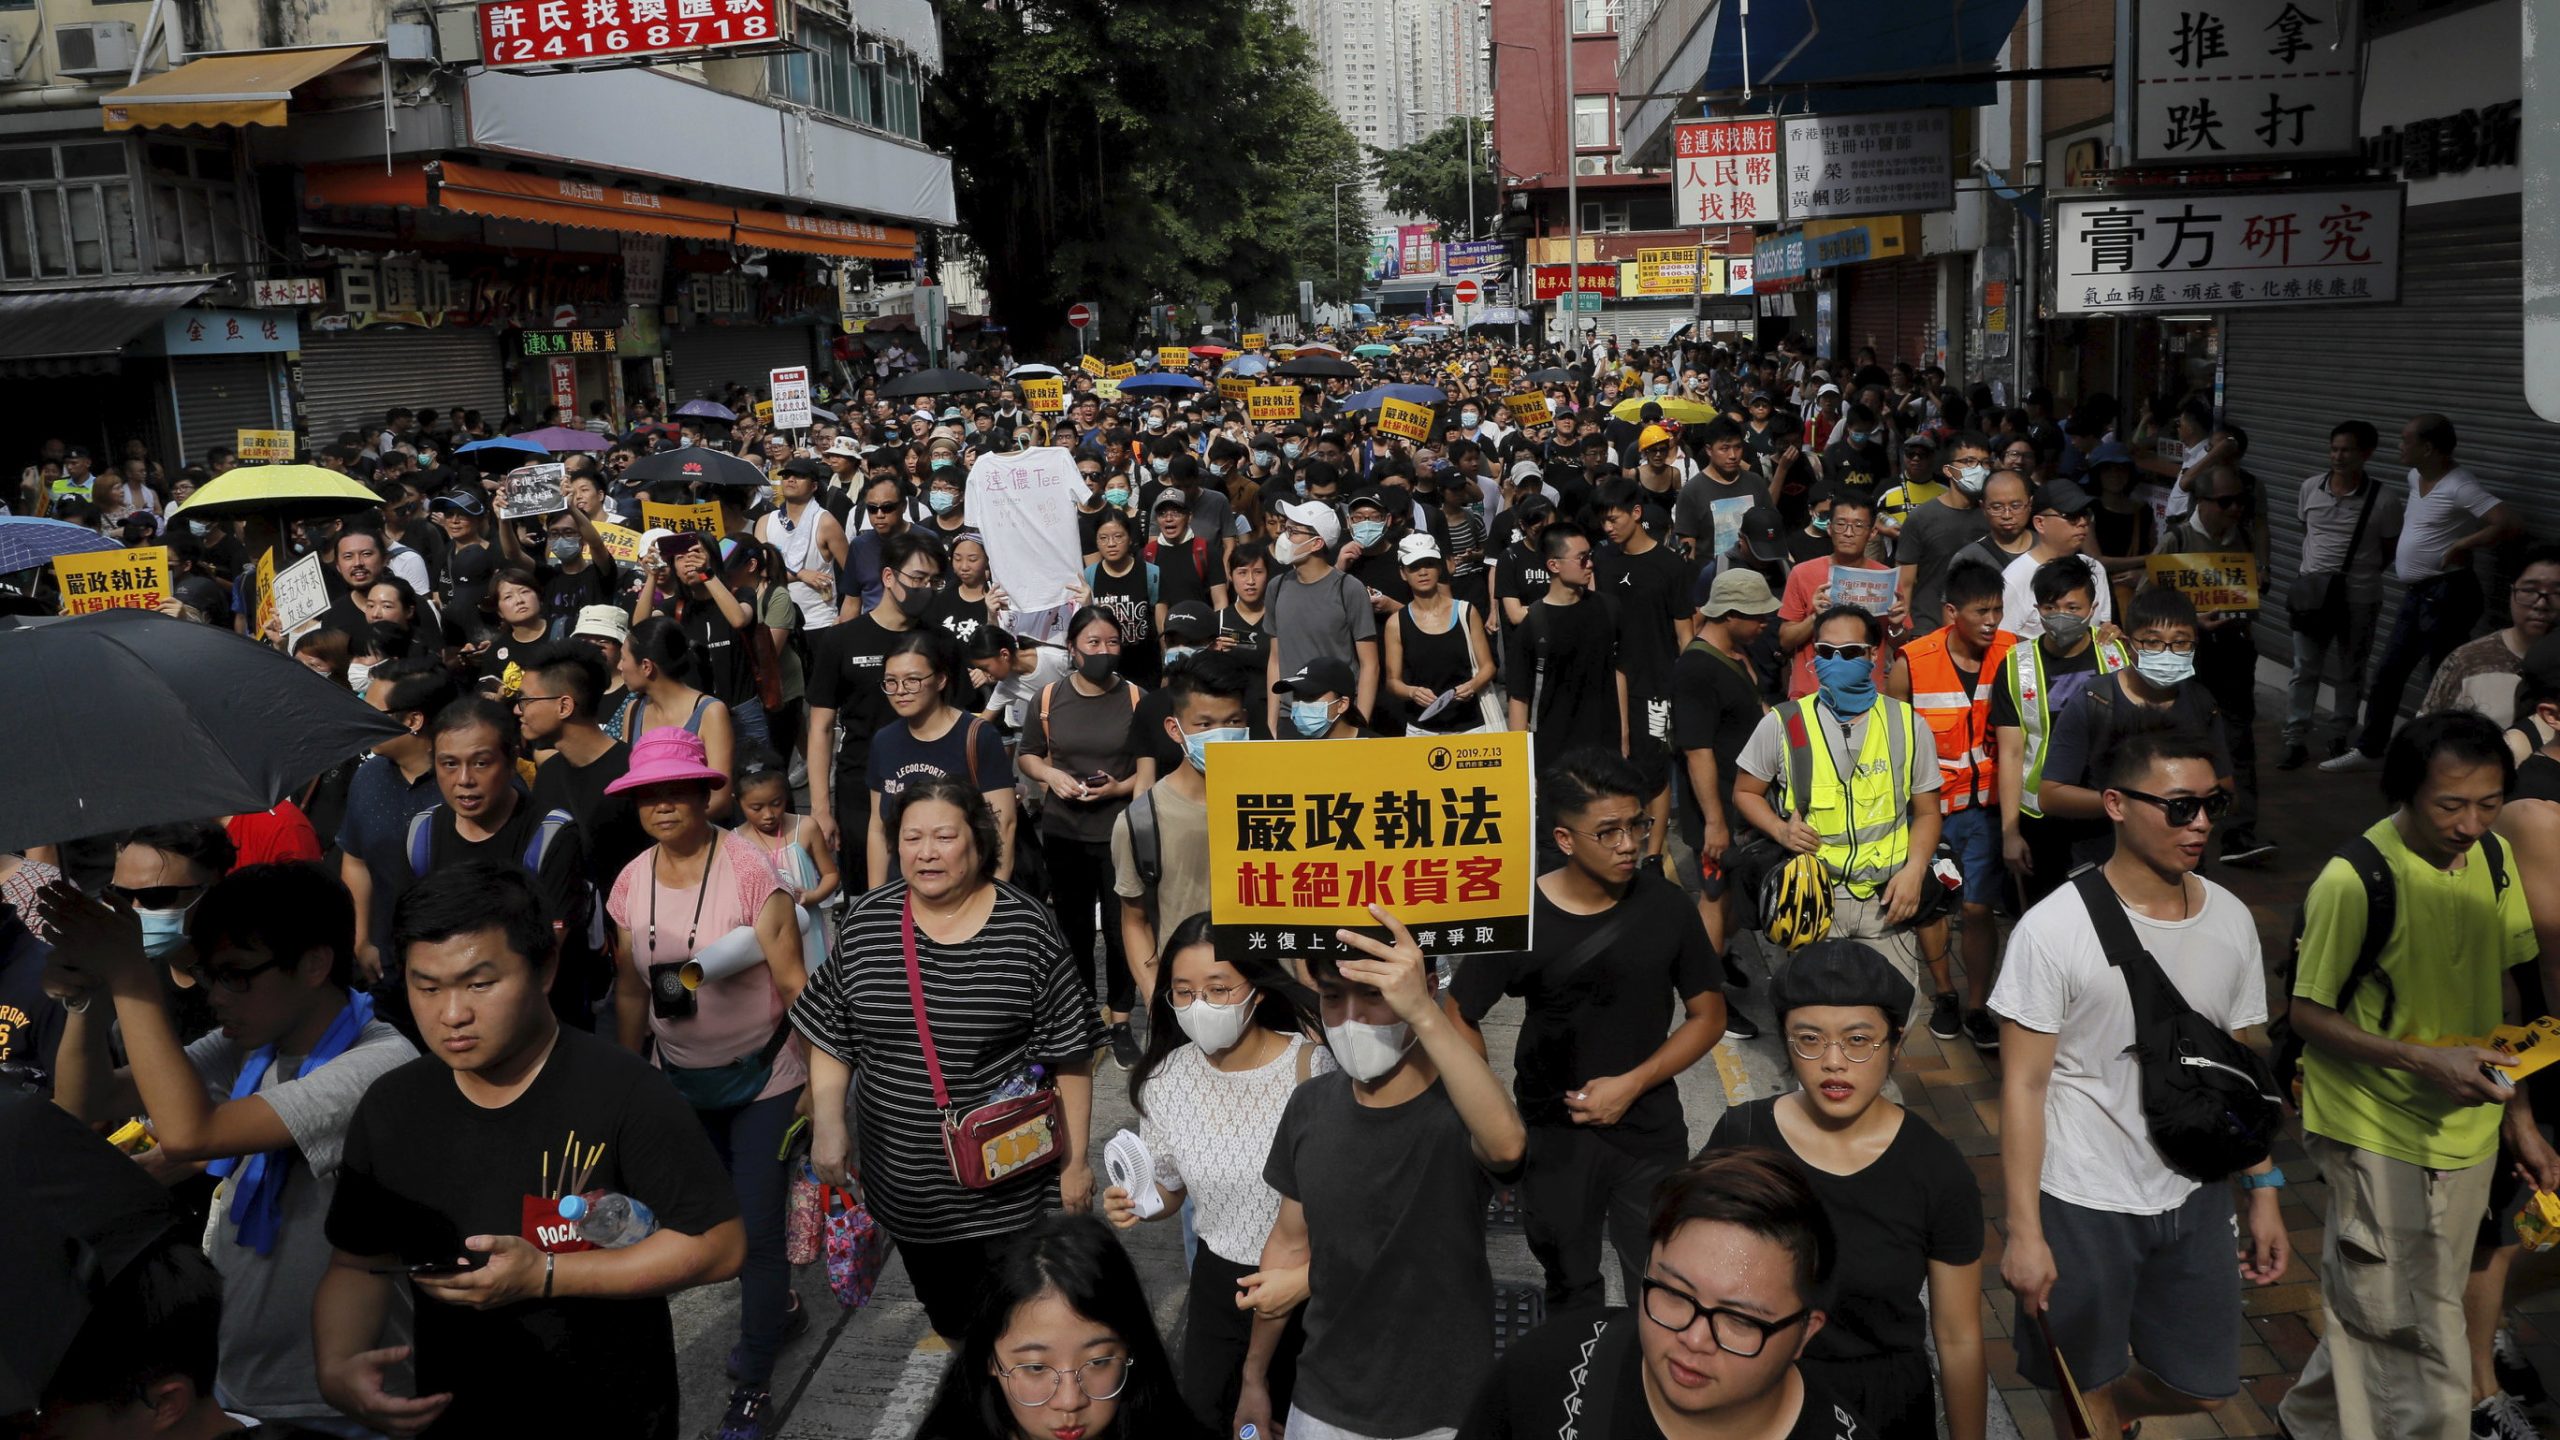 Lem 'zvanično povlači' predlog zakona o izručenju, novi sukobi u Hong Kongu 1